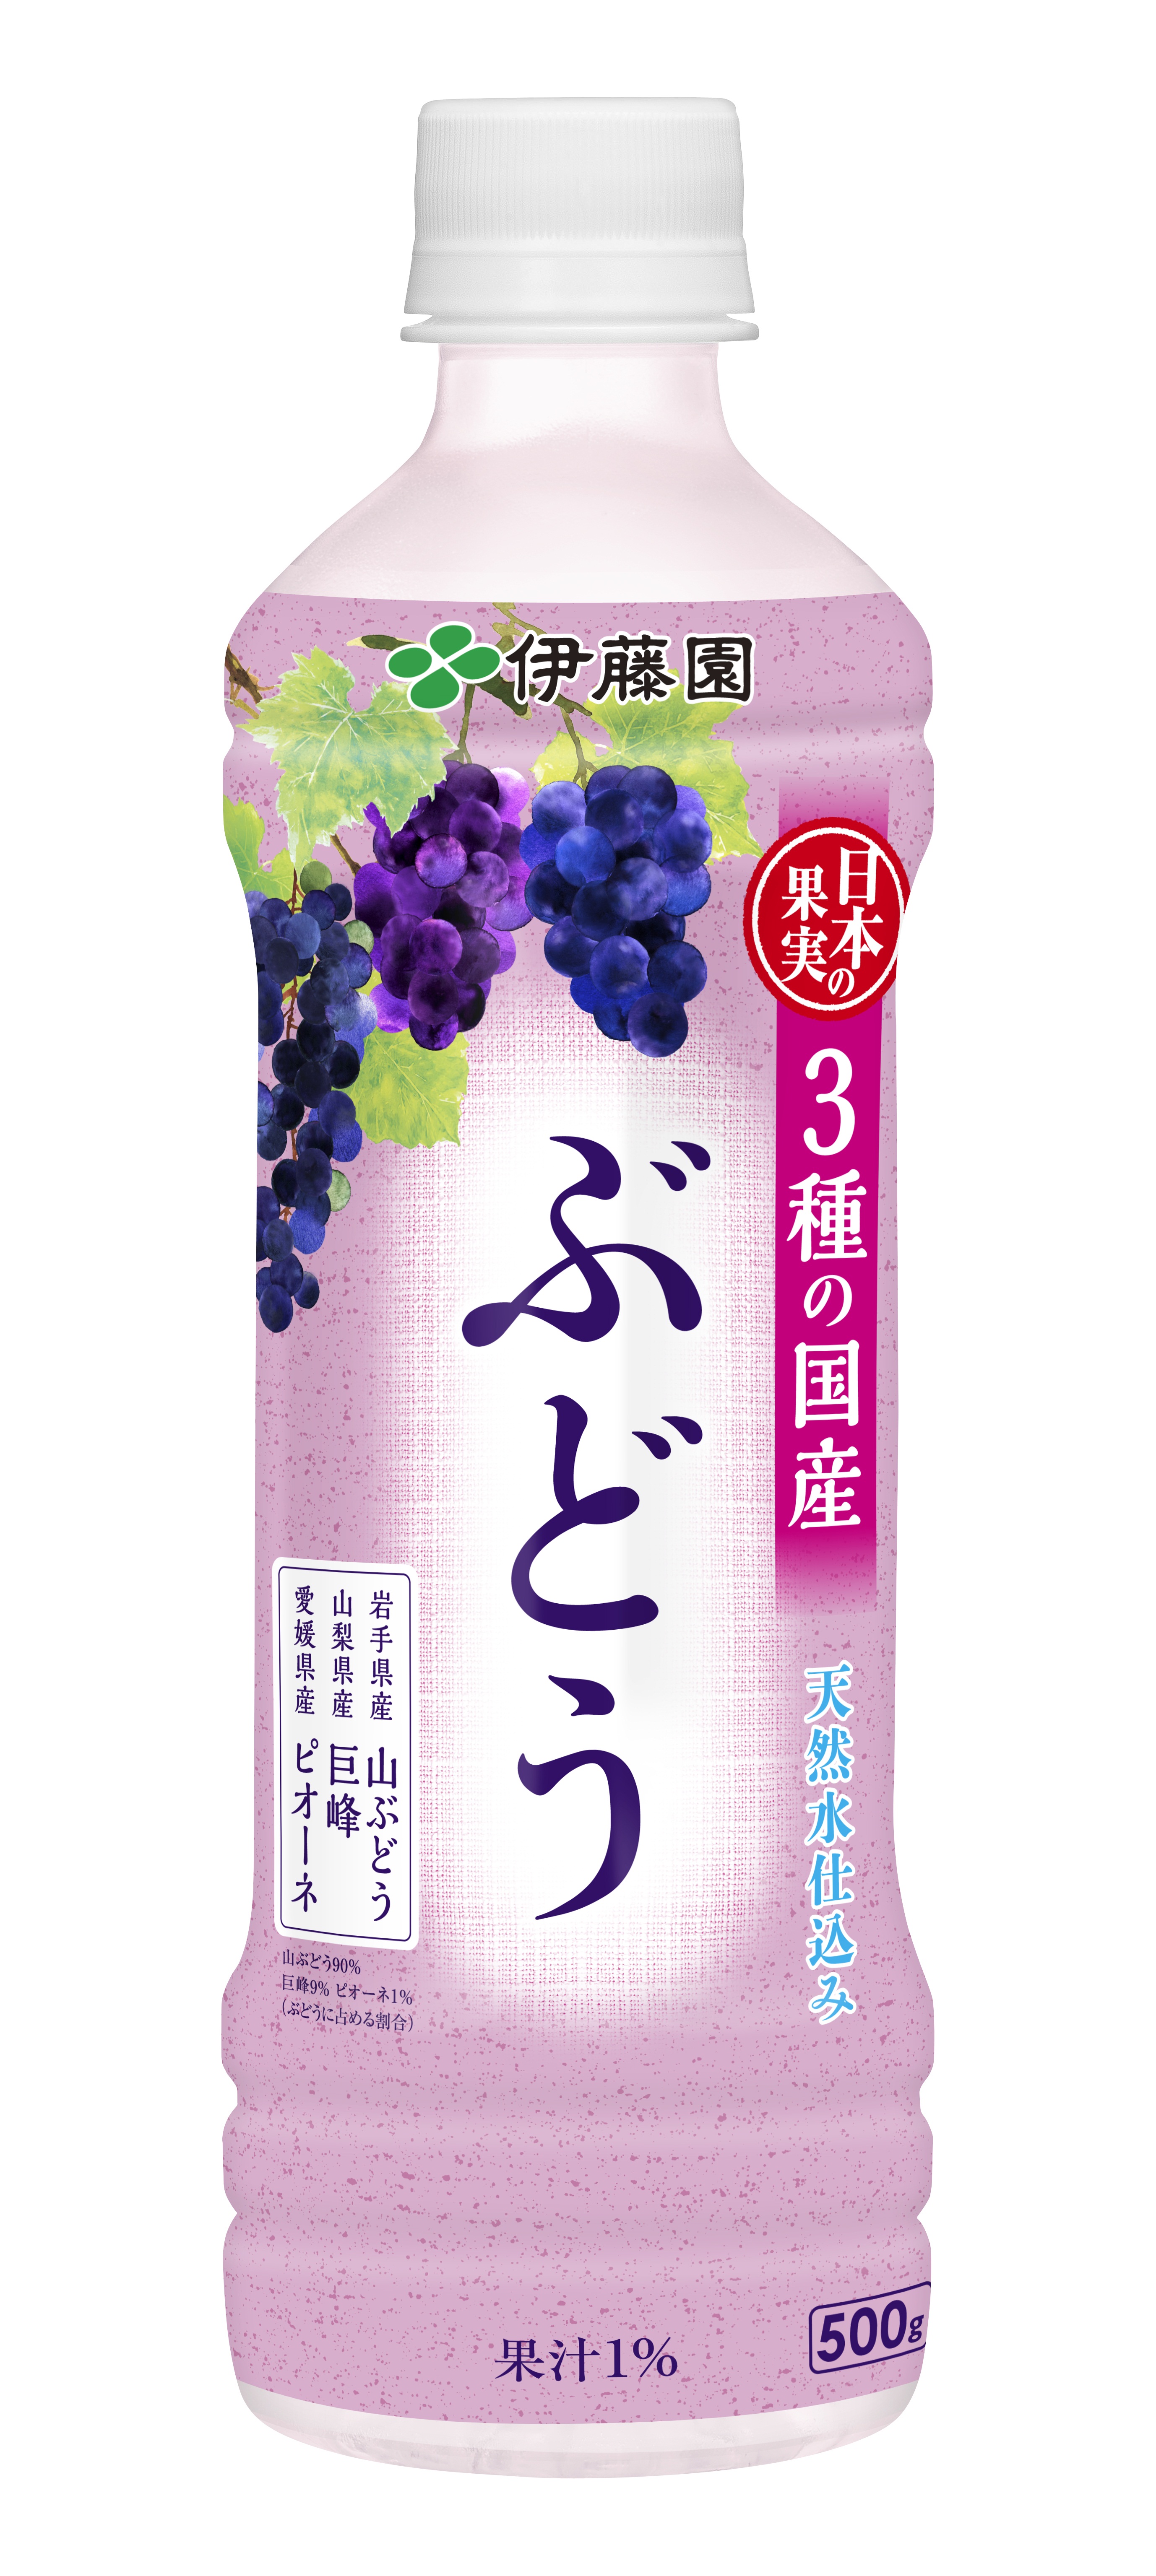 日本の果実 3種の国産ぶどう 11月25日 月 より販売開始 ニュースリリース 伊藤園